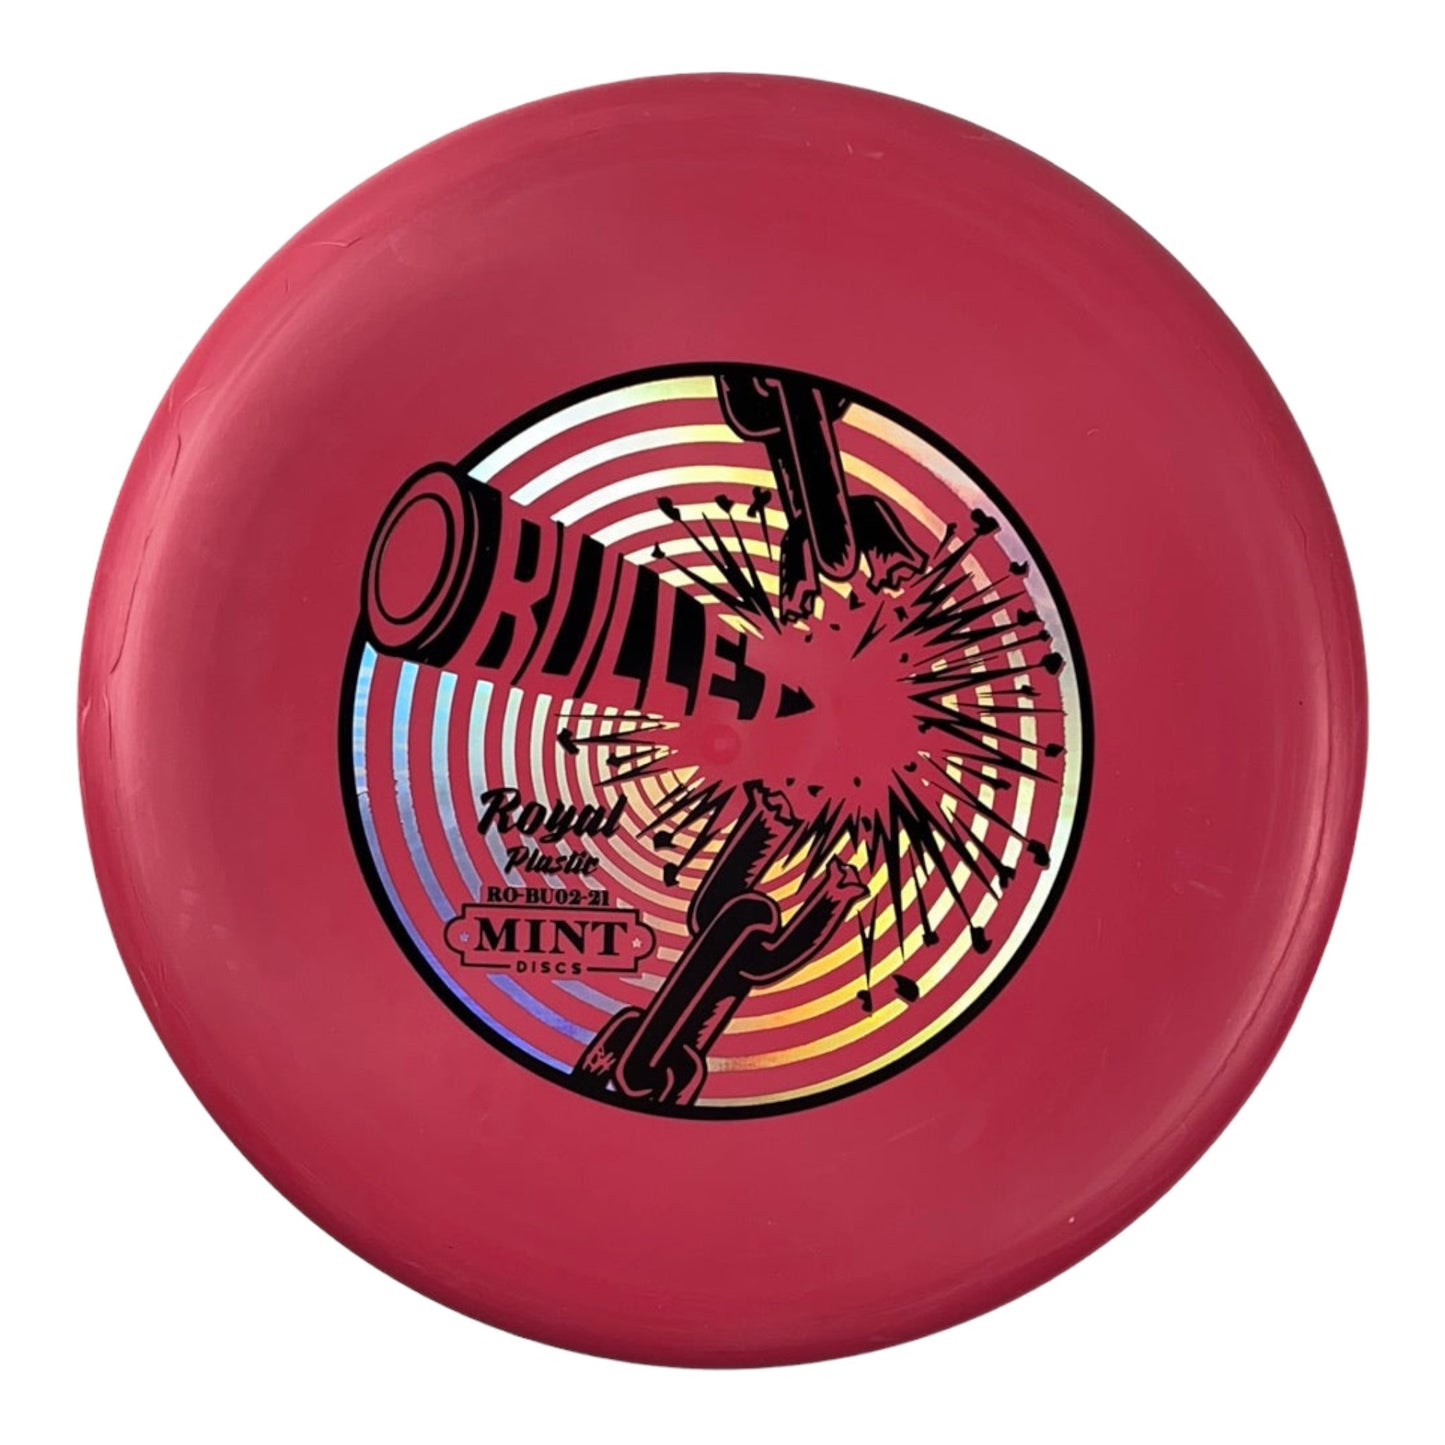 Mint Discs Bullet | Medium Royal | Pink/Holo 173g Disc Golf